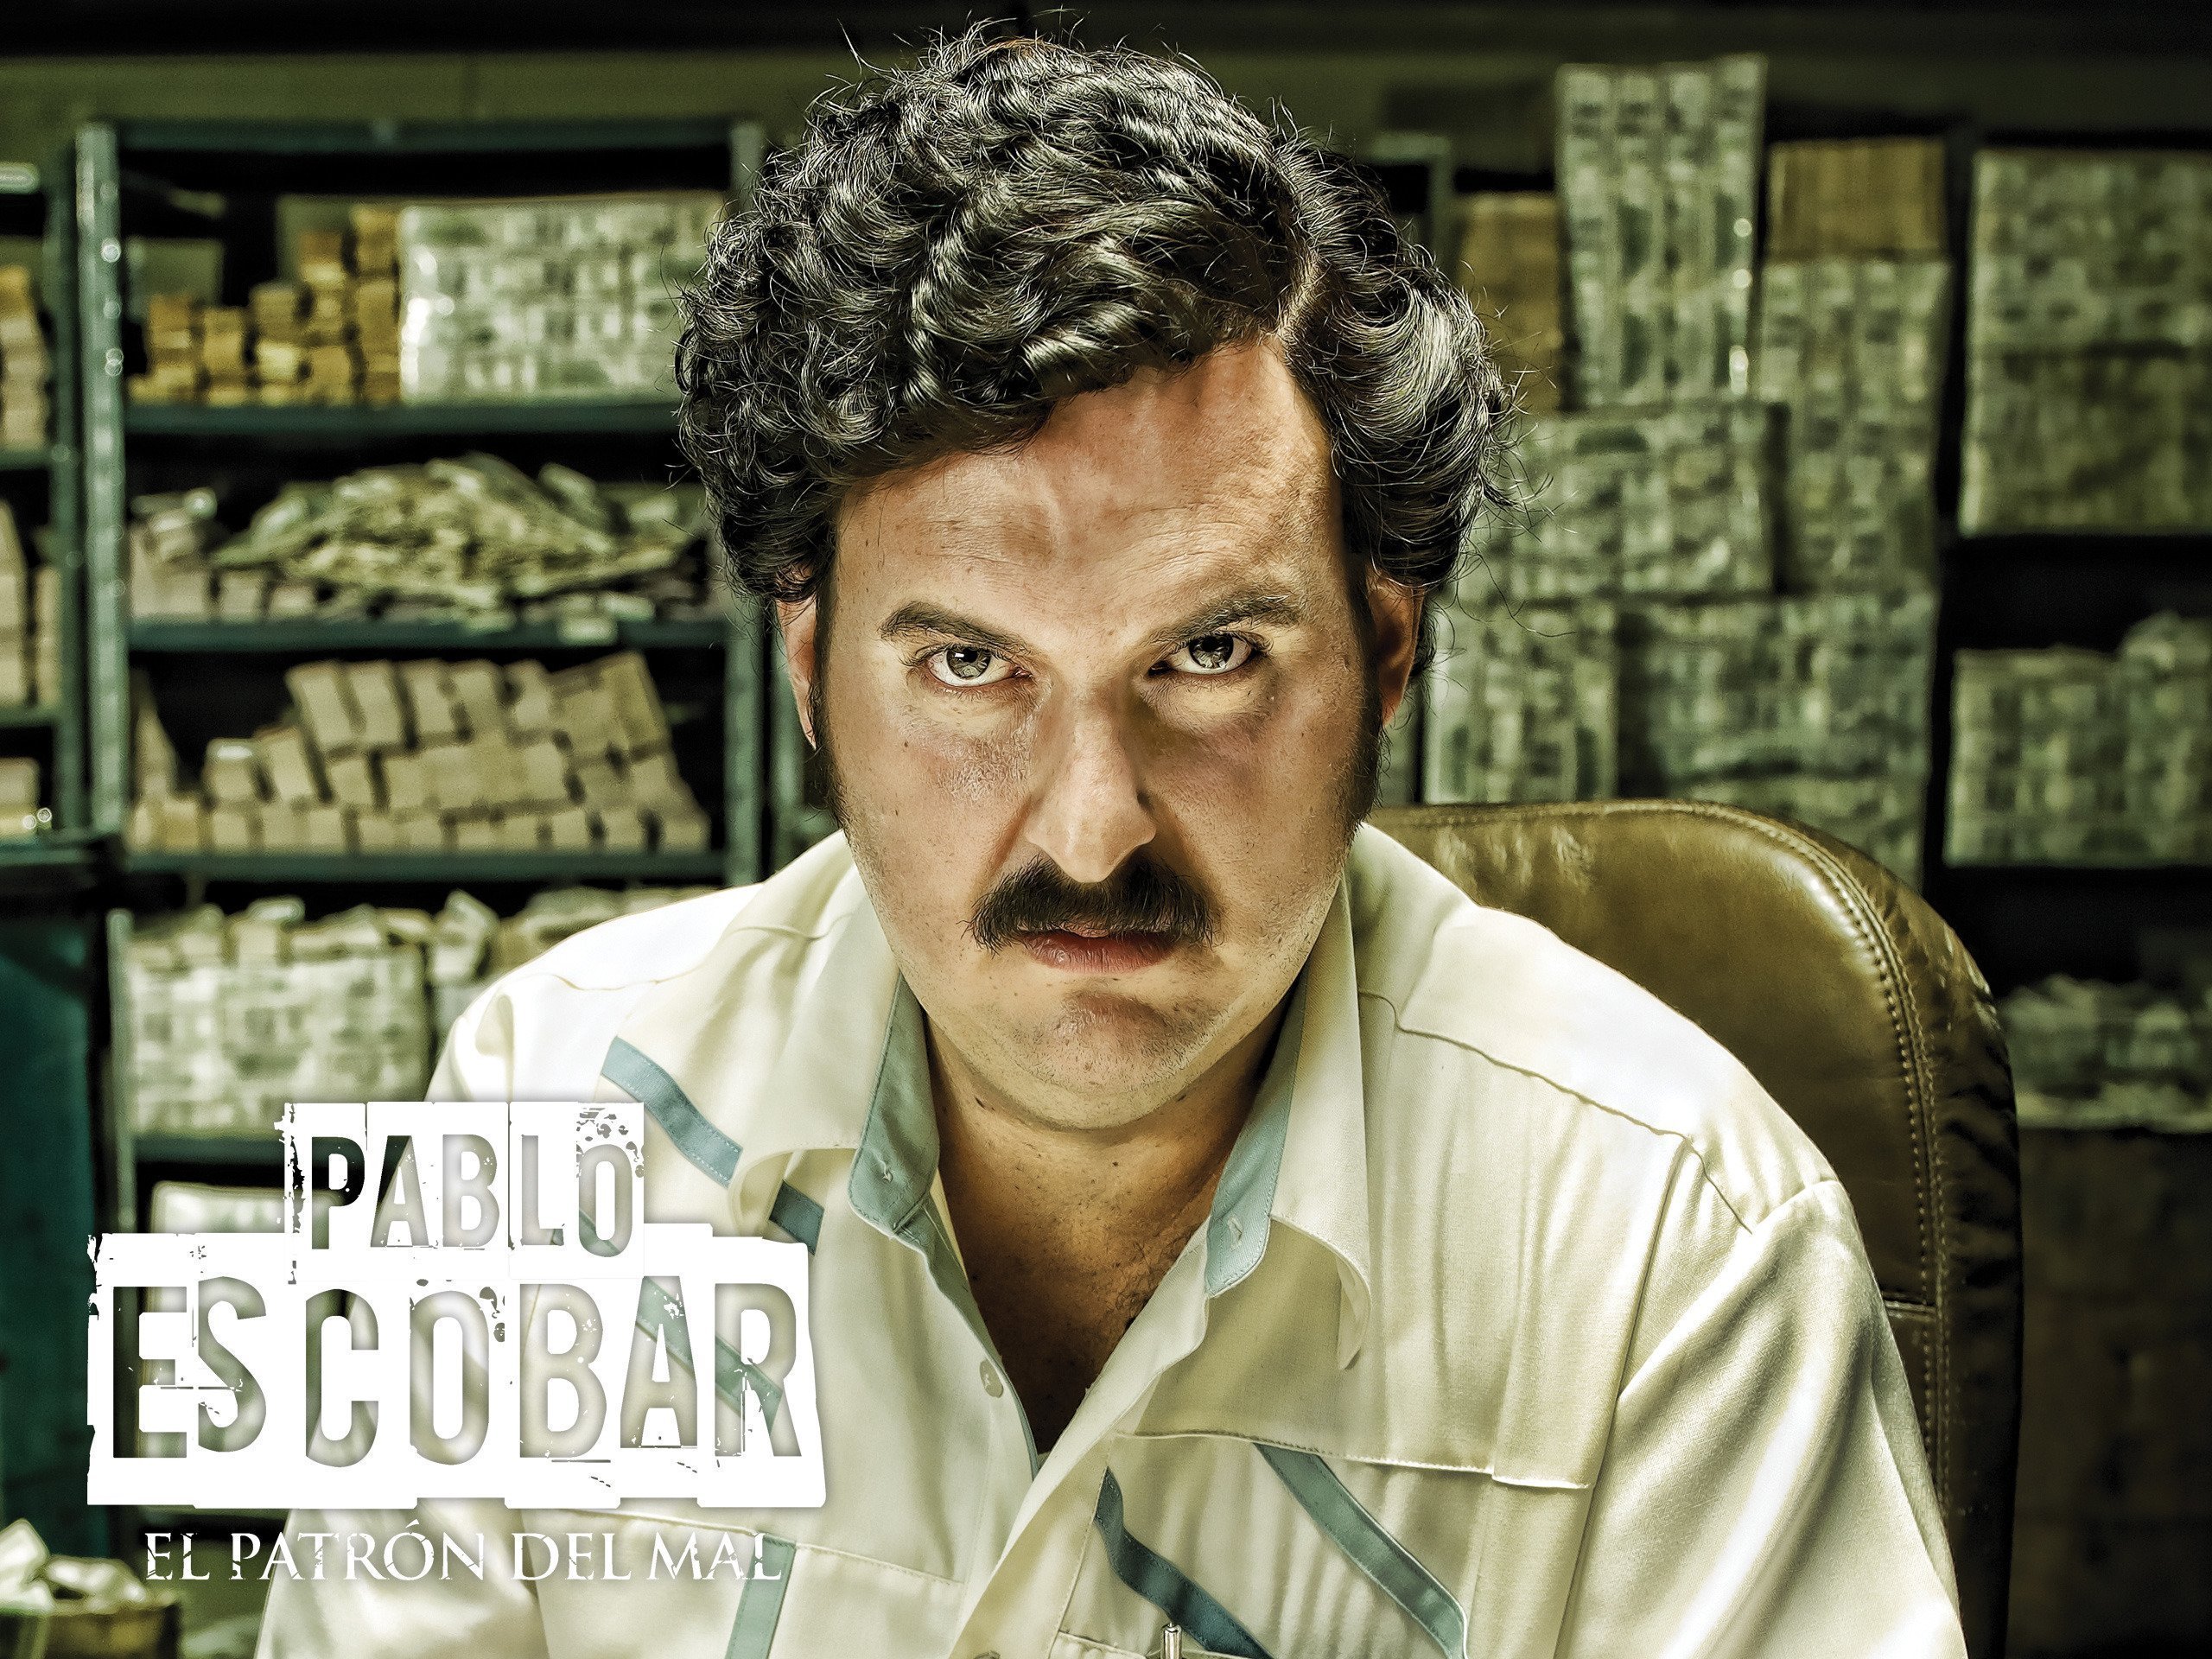 Escobar își ascundea banii în pereții caselor pe care le deținea